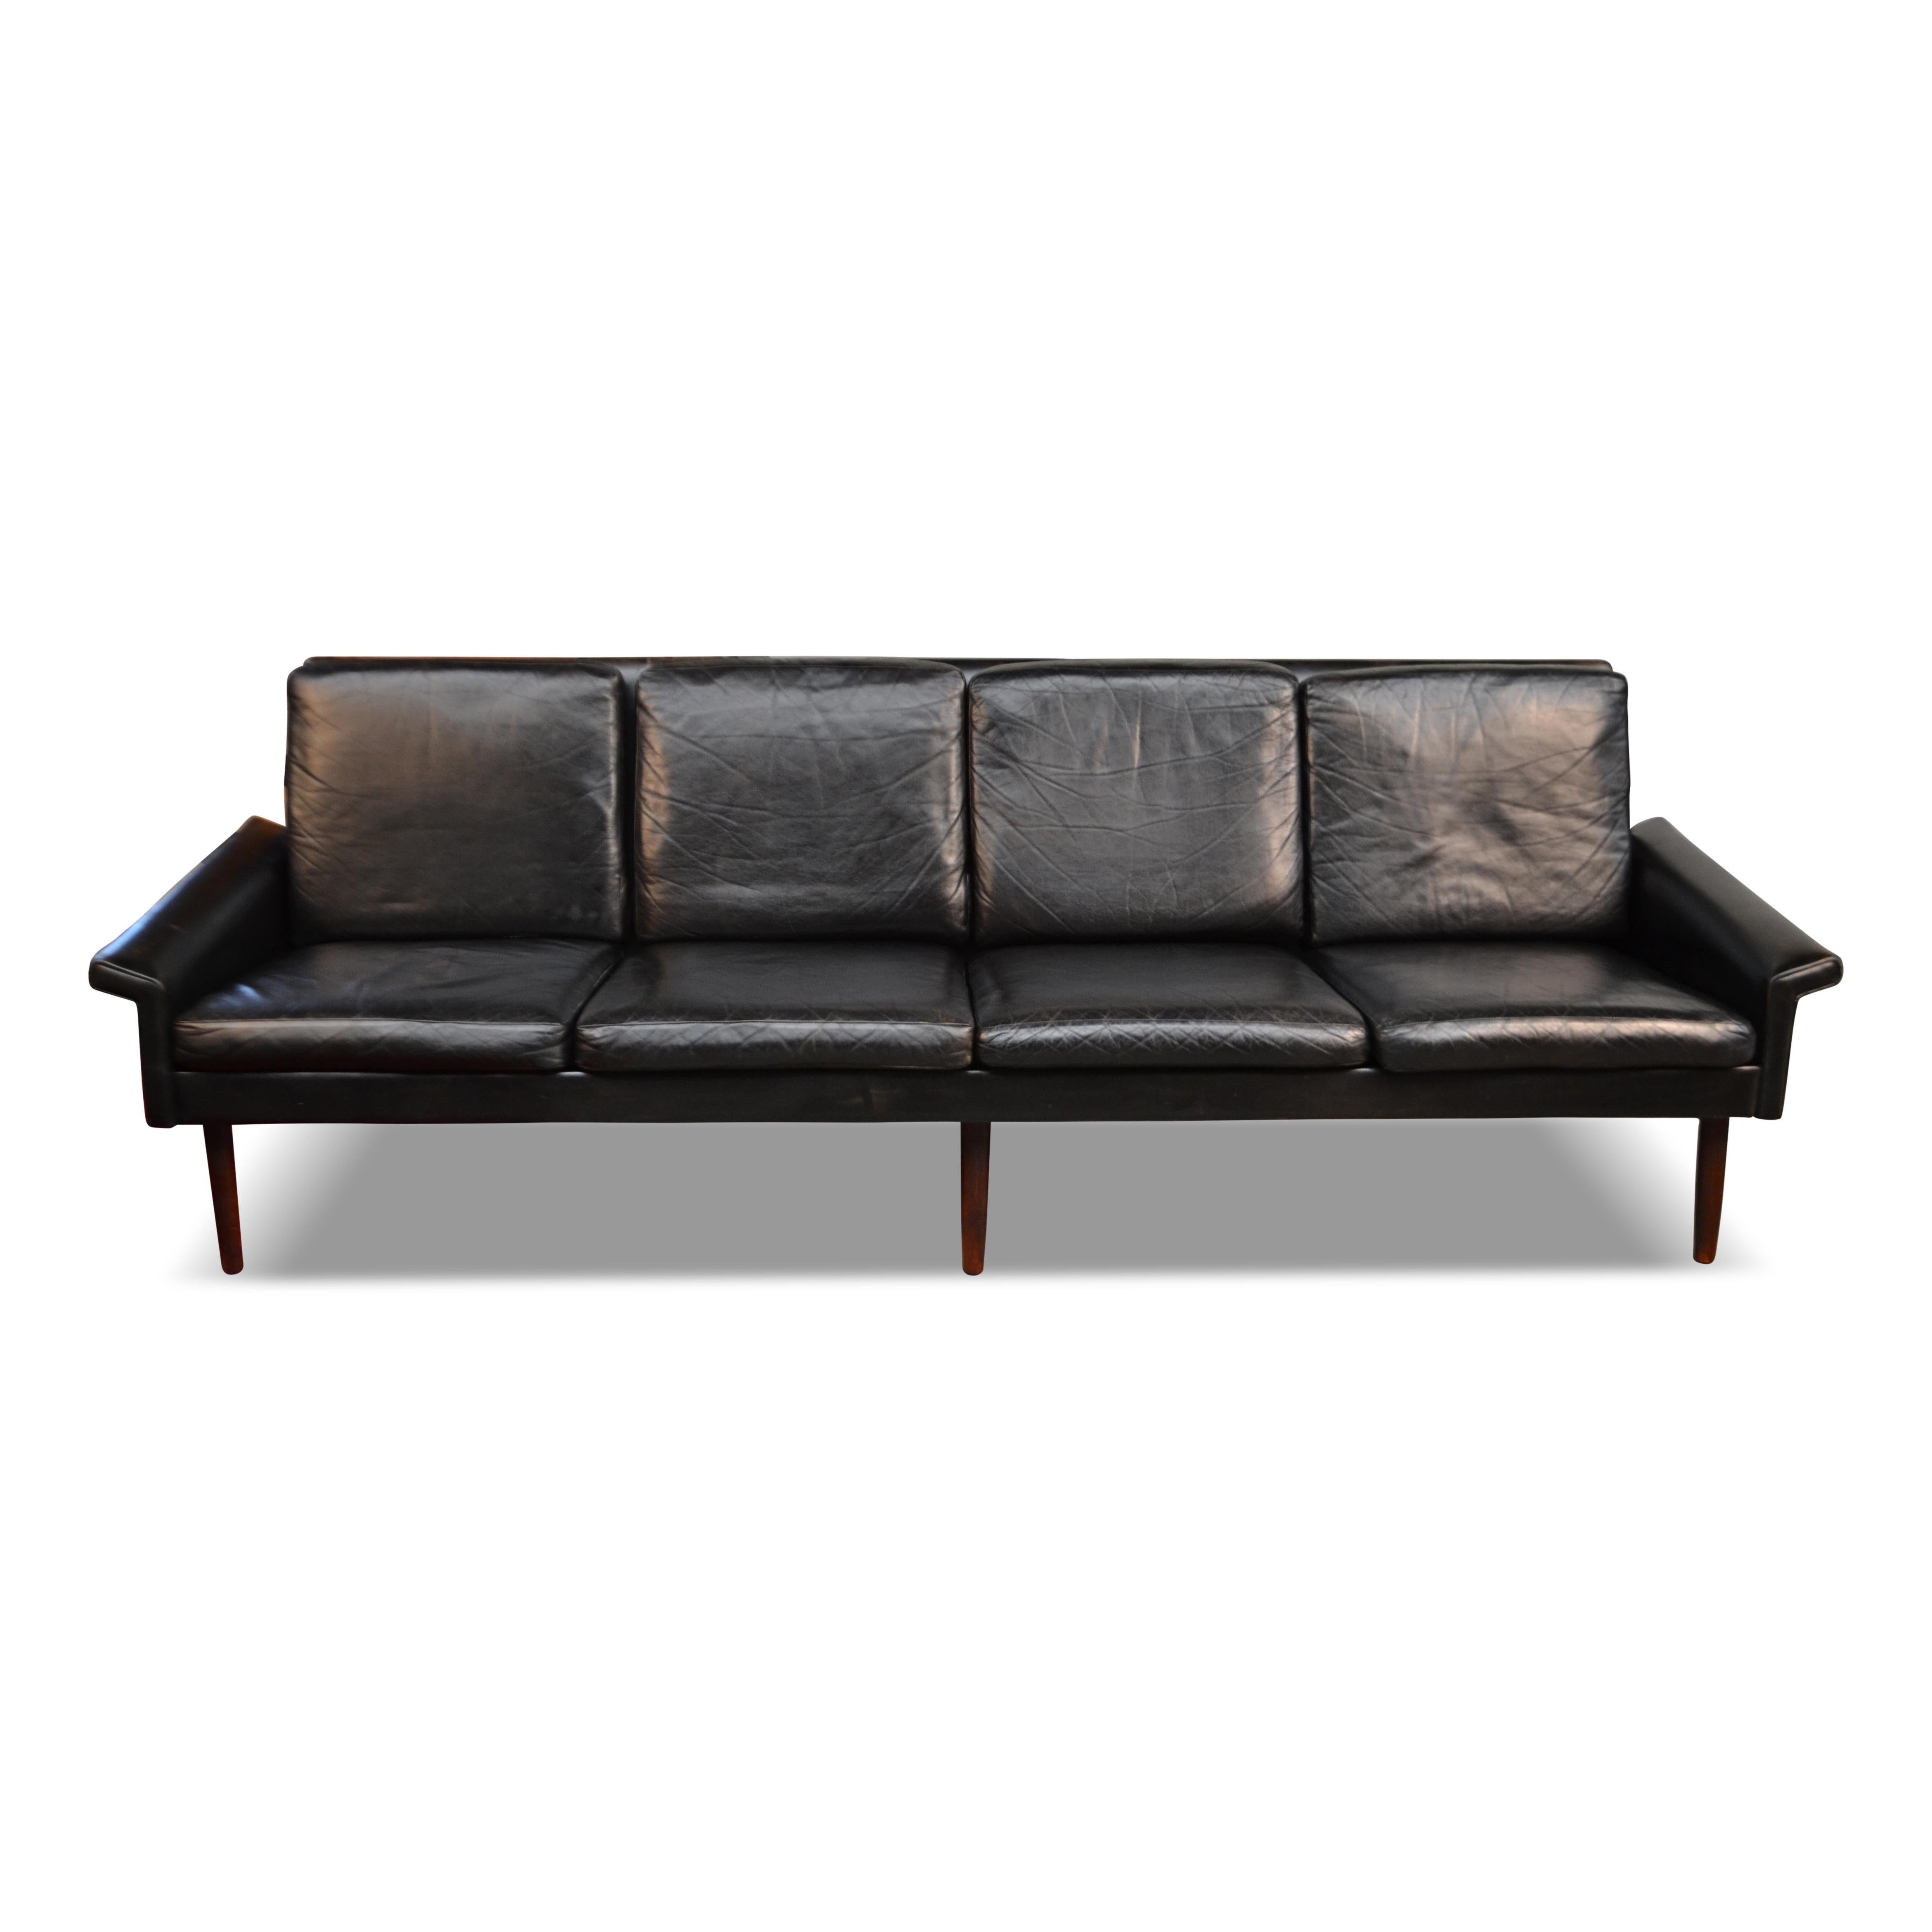 Canapé vintage en cuir à quatre places conçu par le designer danois Hans Olsen pour C.S. Møbler, Danemark. Ce modèle rare présente un élégant cadre en bois recouvert de huit coussins rembourrés de cuir. Ajoutez instantanément de l'éclat à votre